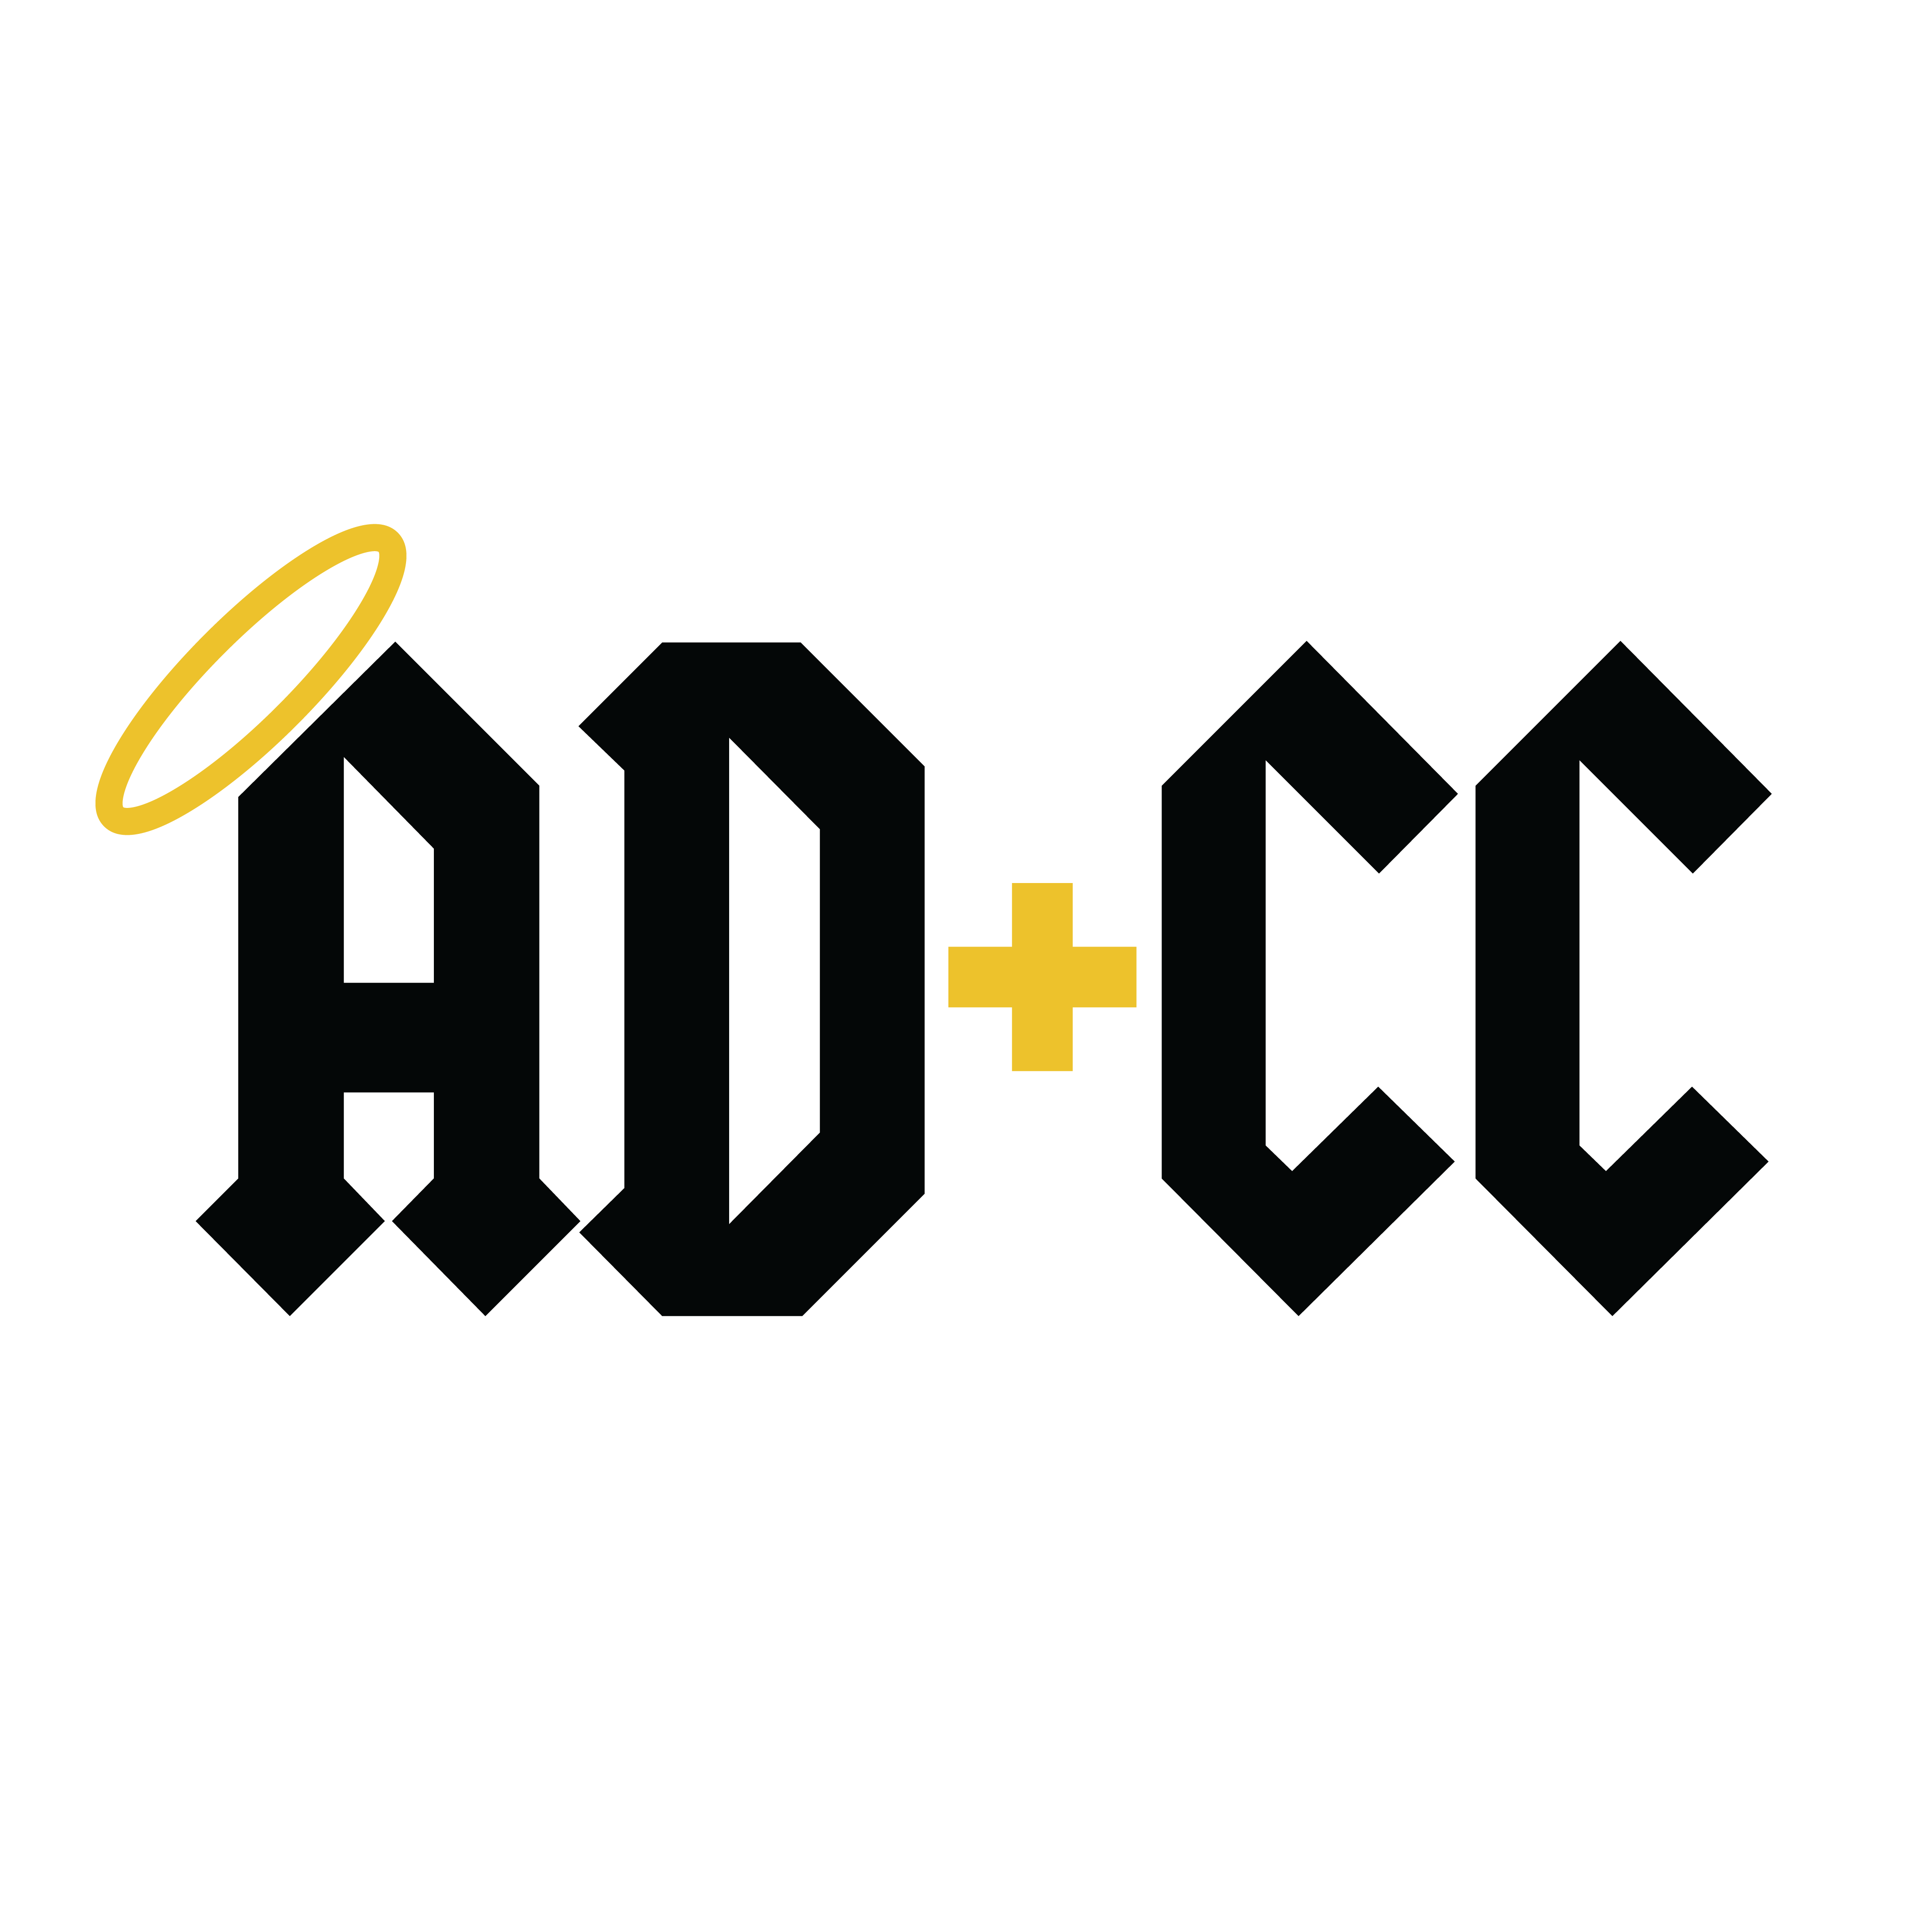 ADCC - Medical Marijuana Doctors - Cannabizme.com